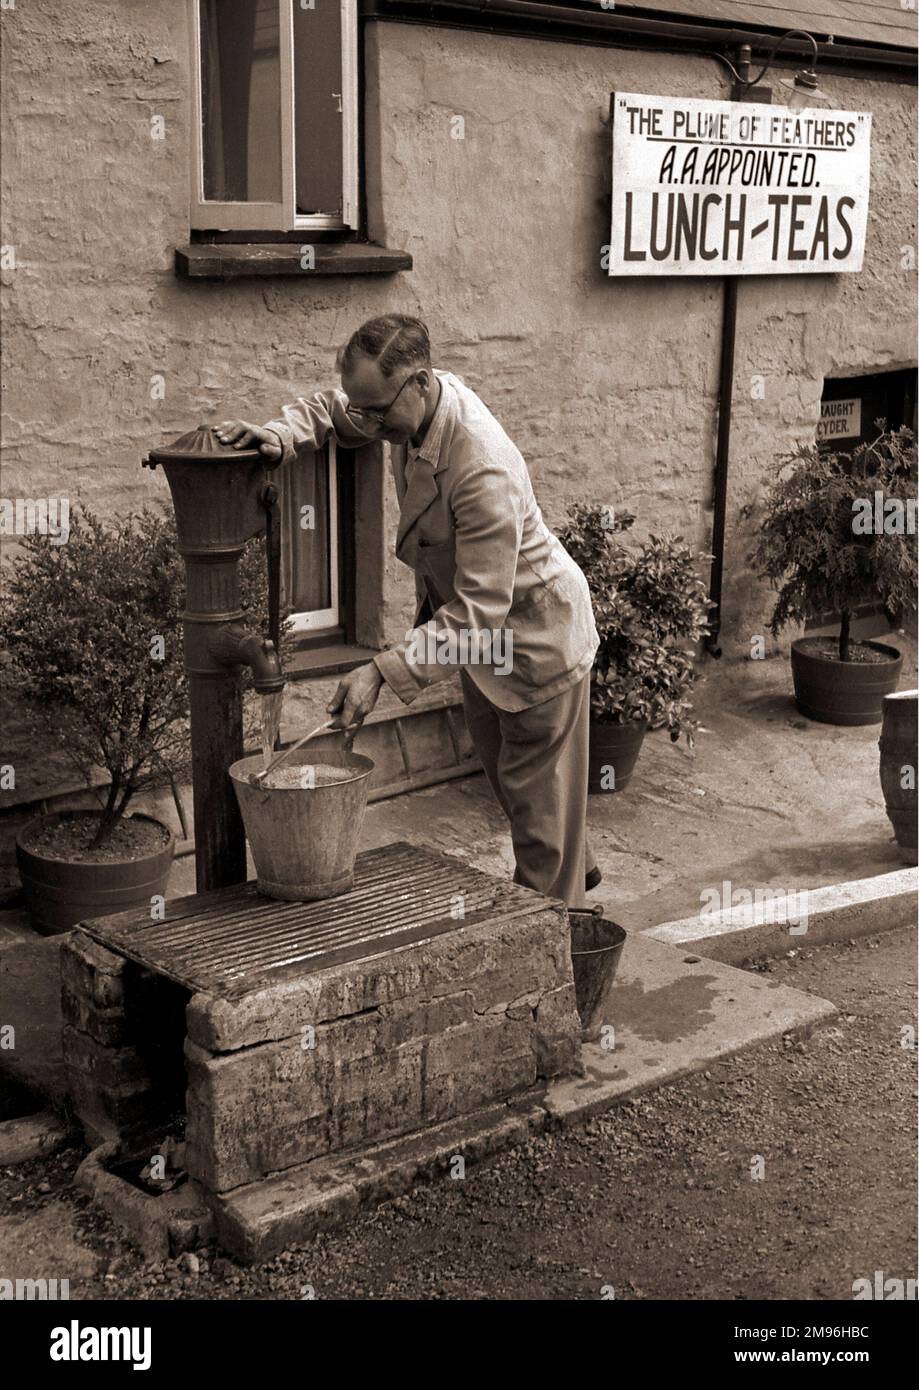 Ein Mann, der an einer Wasserpumpe einen Eimer füllt, vor einem Gasthaus namens „The Plume of Feathers“, empfohlen von der Automobilvereinigung, serviert Mittagessen, Tee und Apfelwein vom Fass. Stockfoto